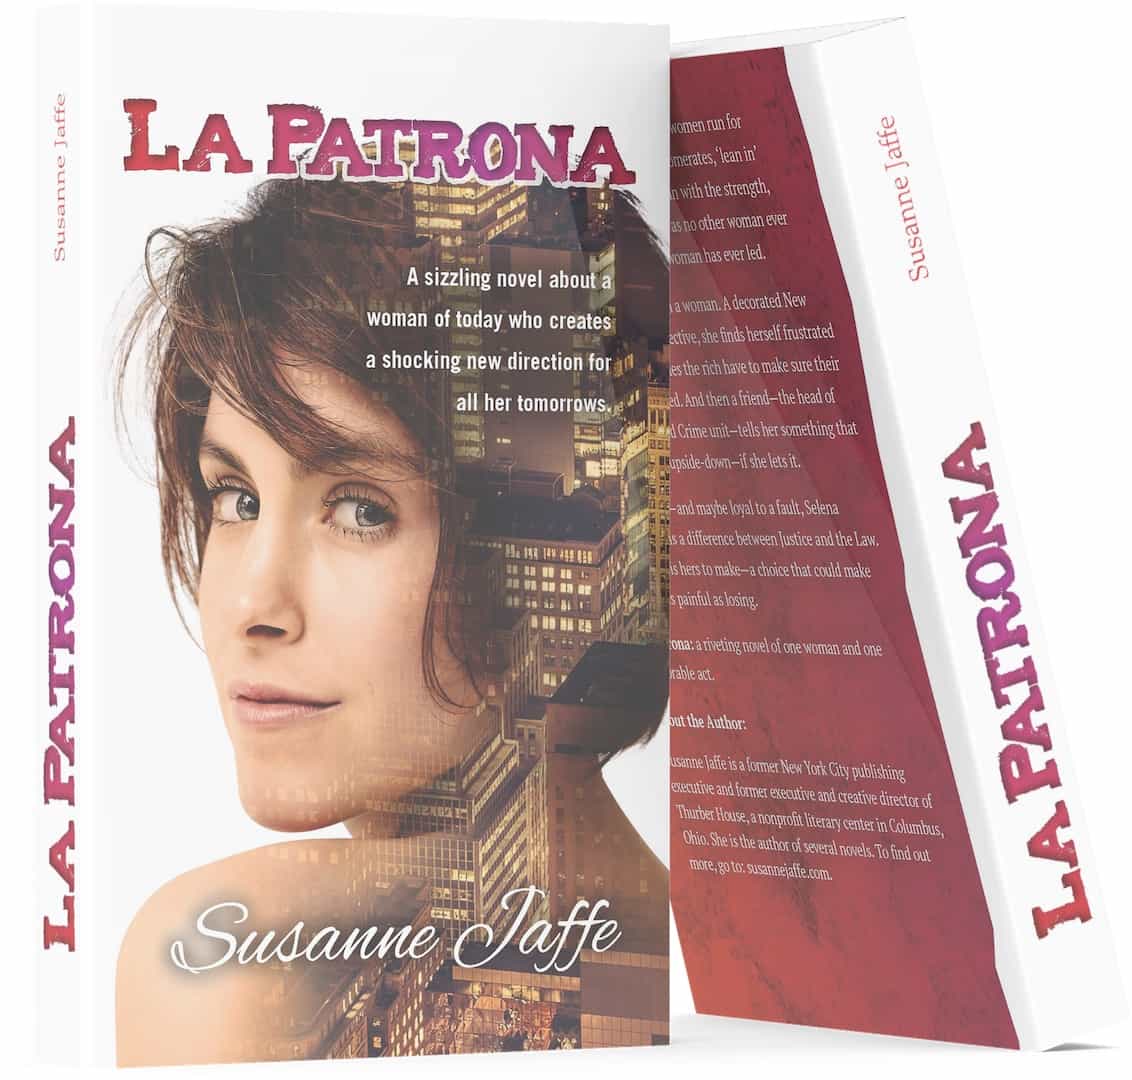 La Patrona Book Cover and Back